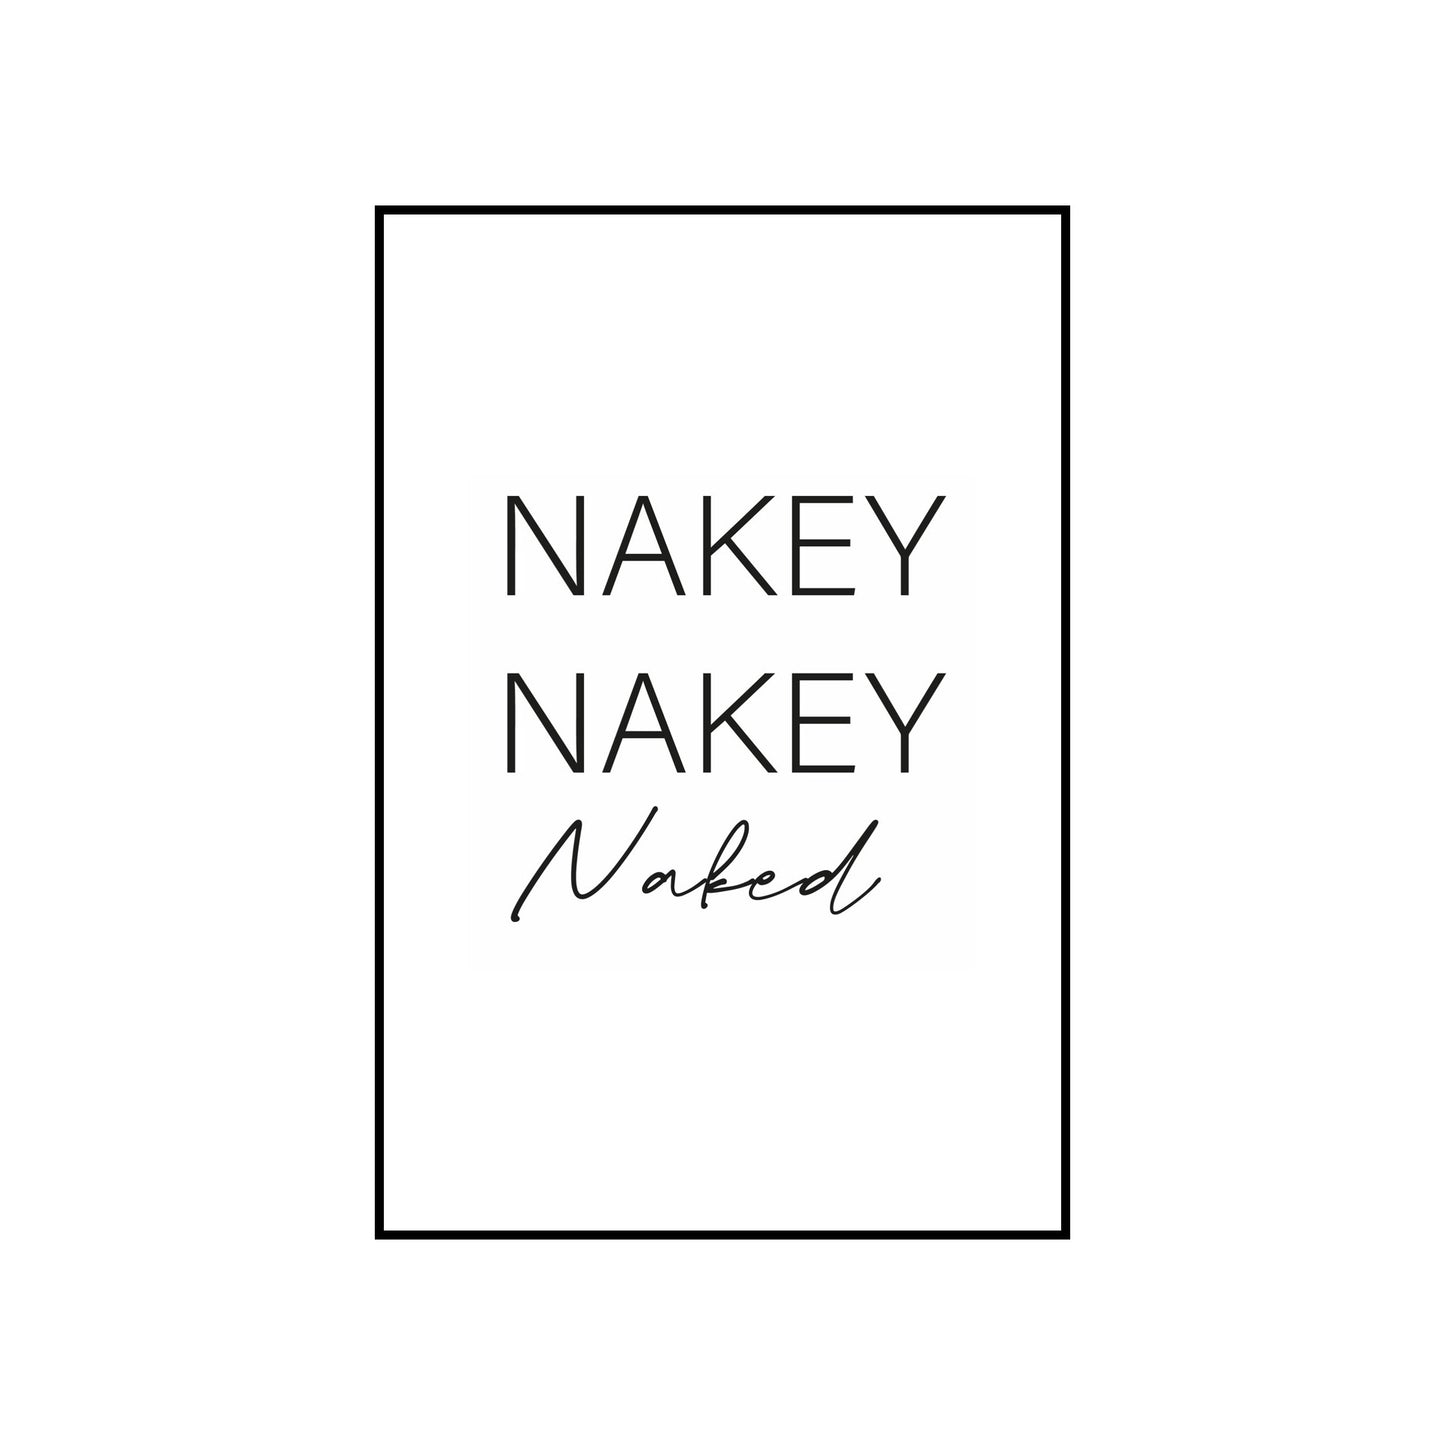 Nakey nakey naked